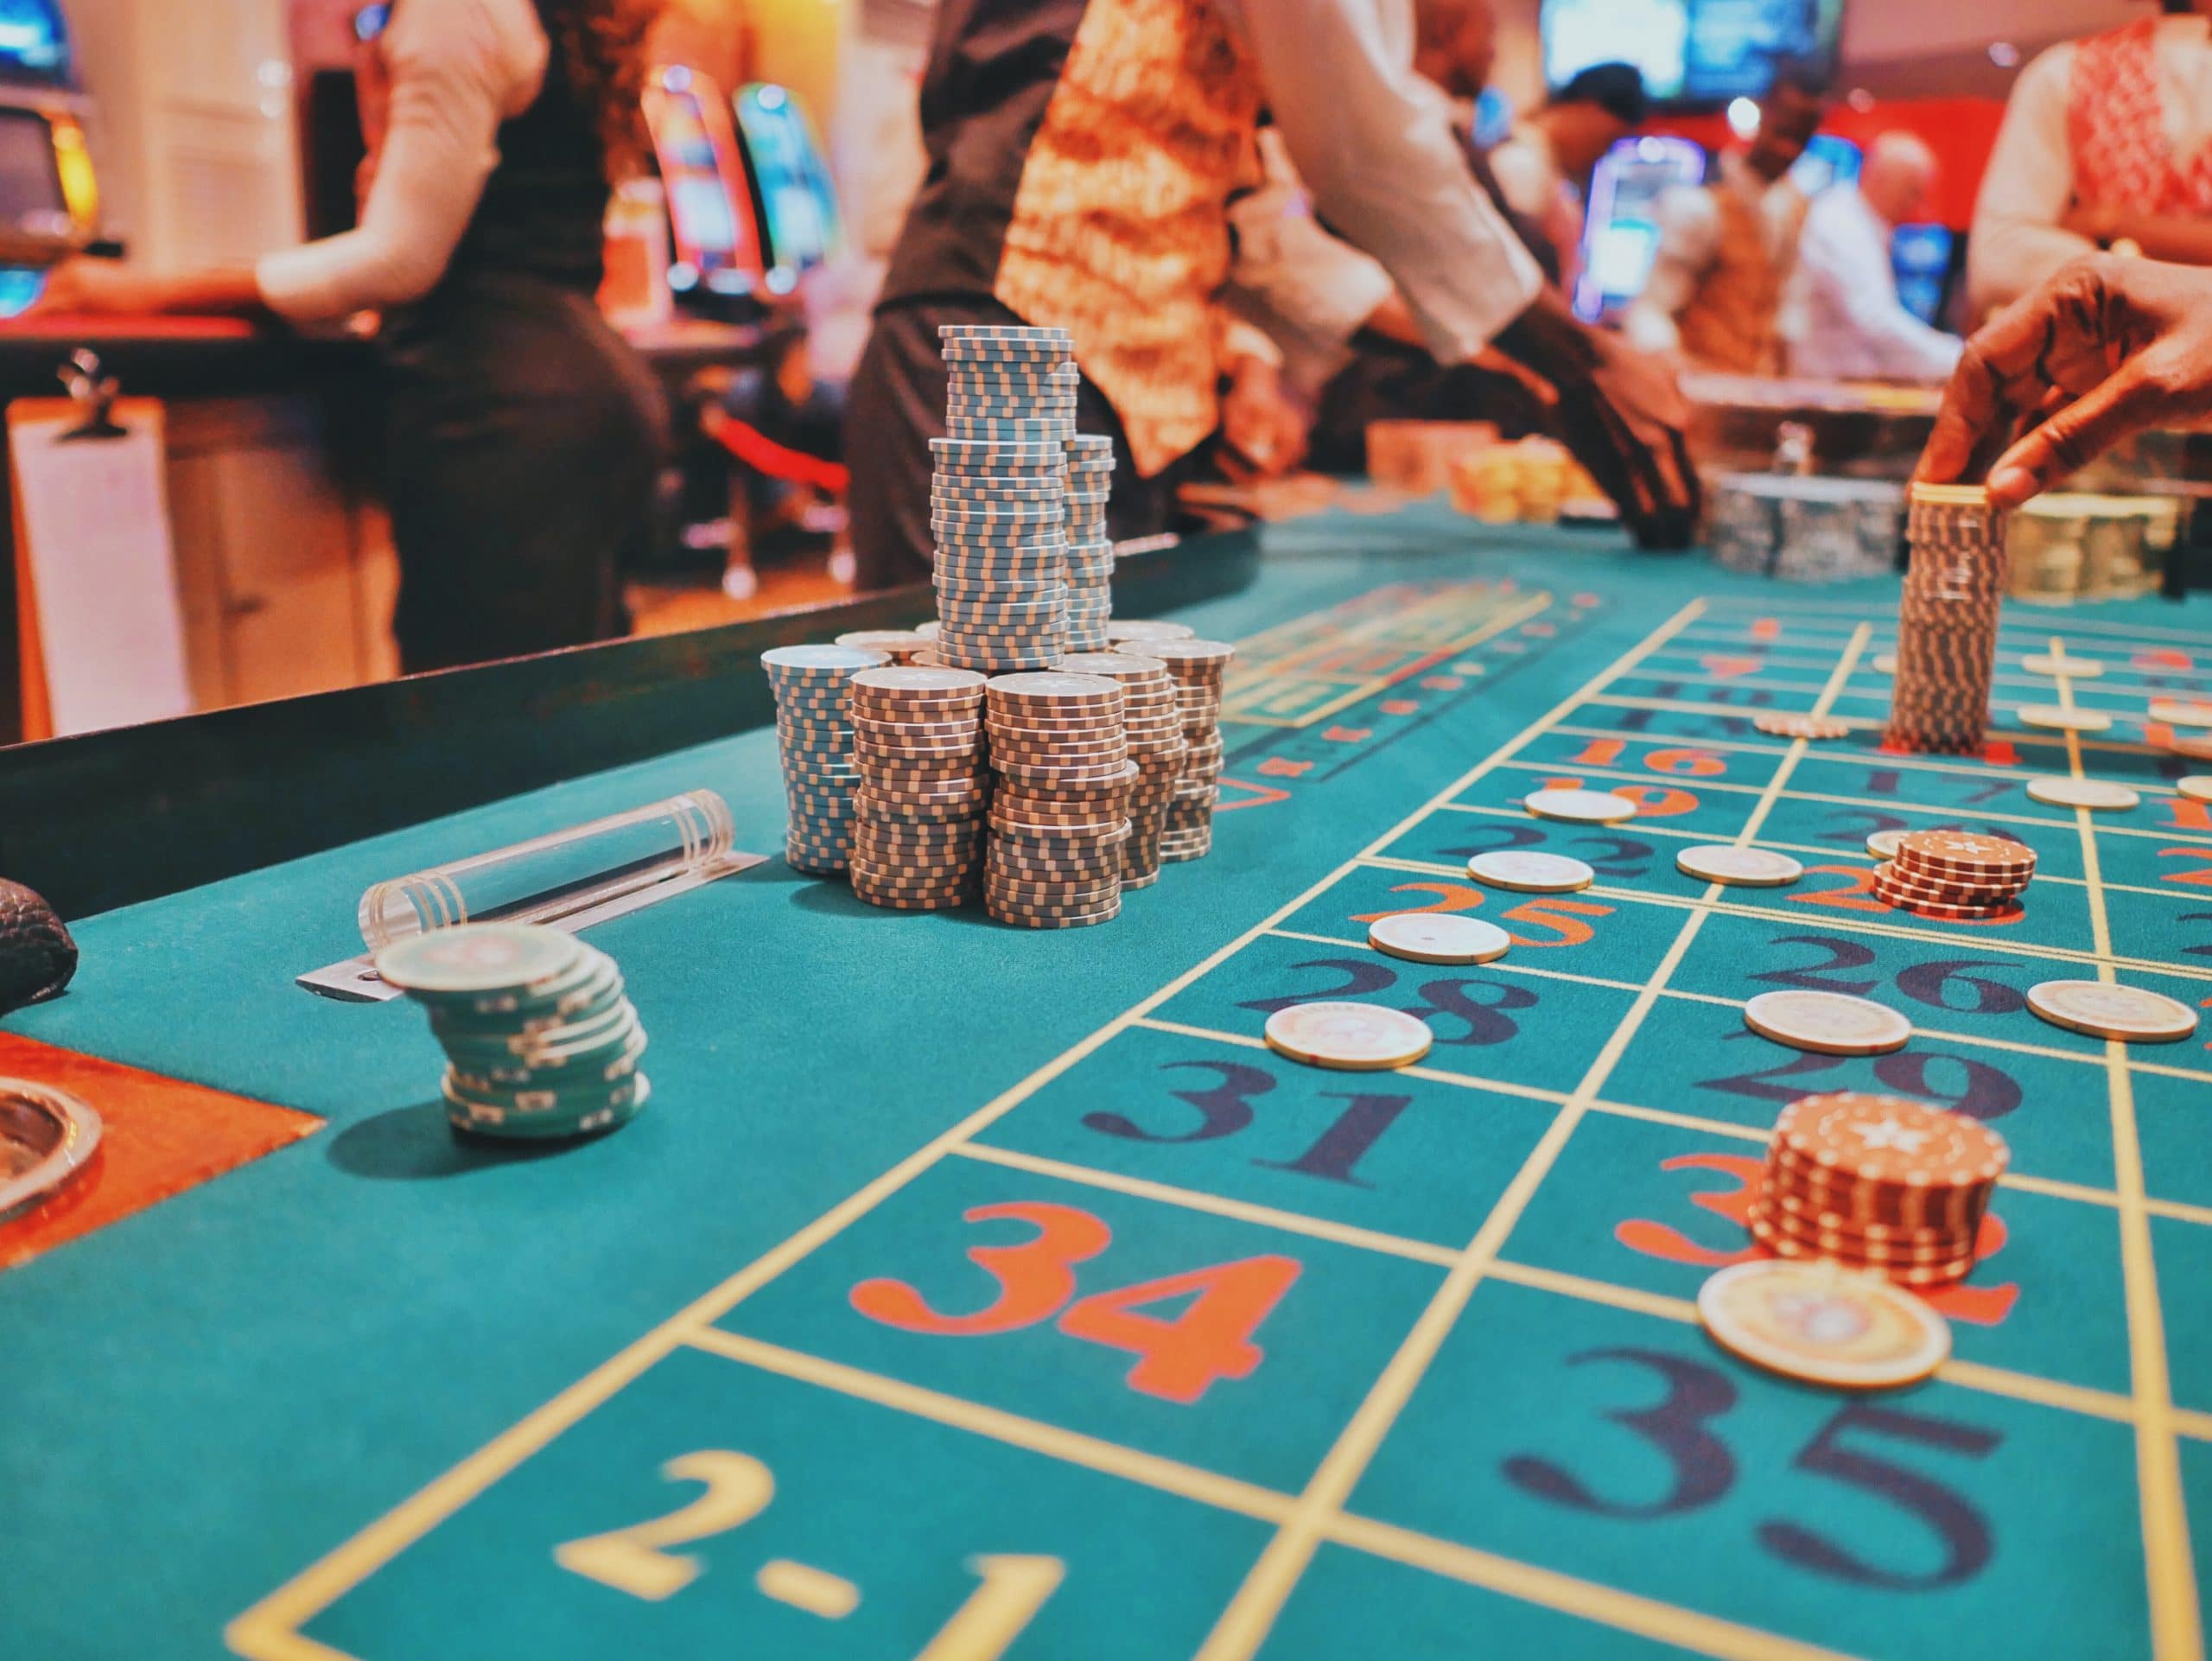 Warning signs of gambling addiction